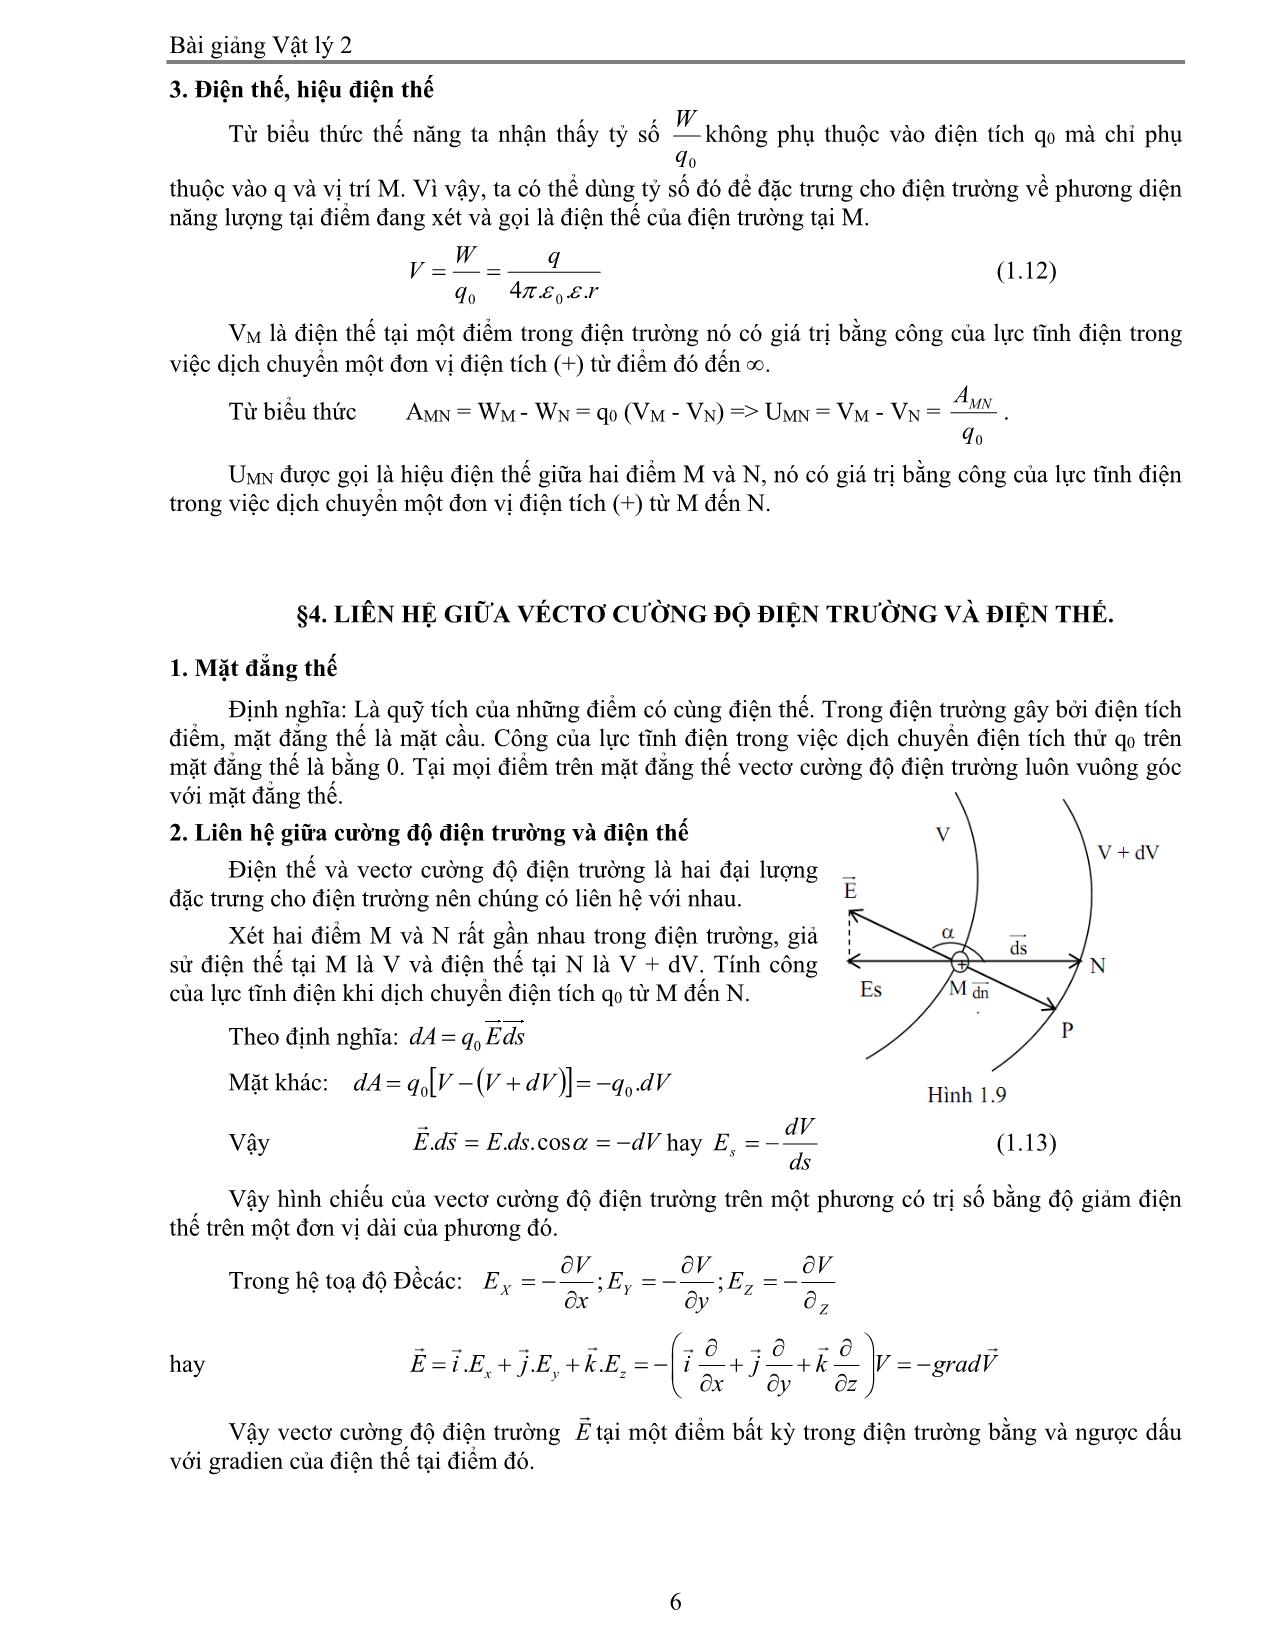 Giáo trình Vật lý 2 trang 6